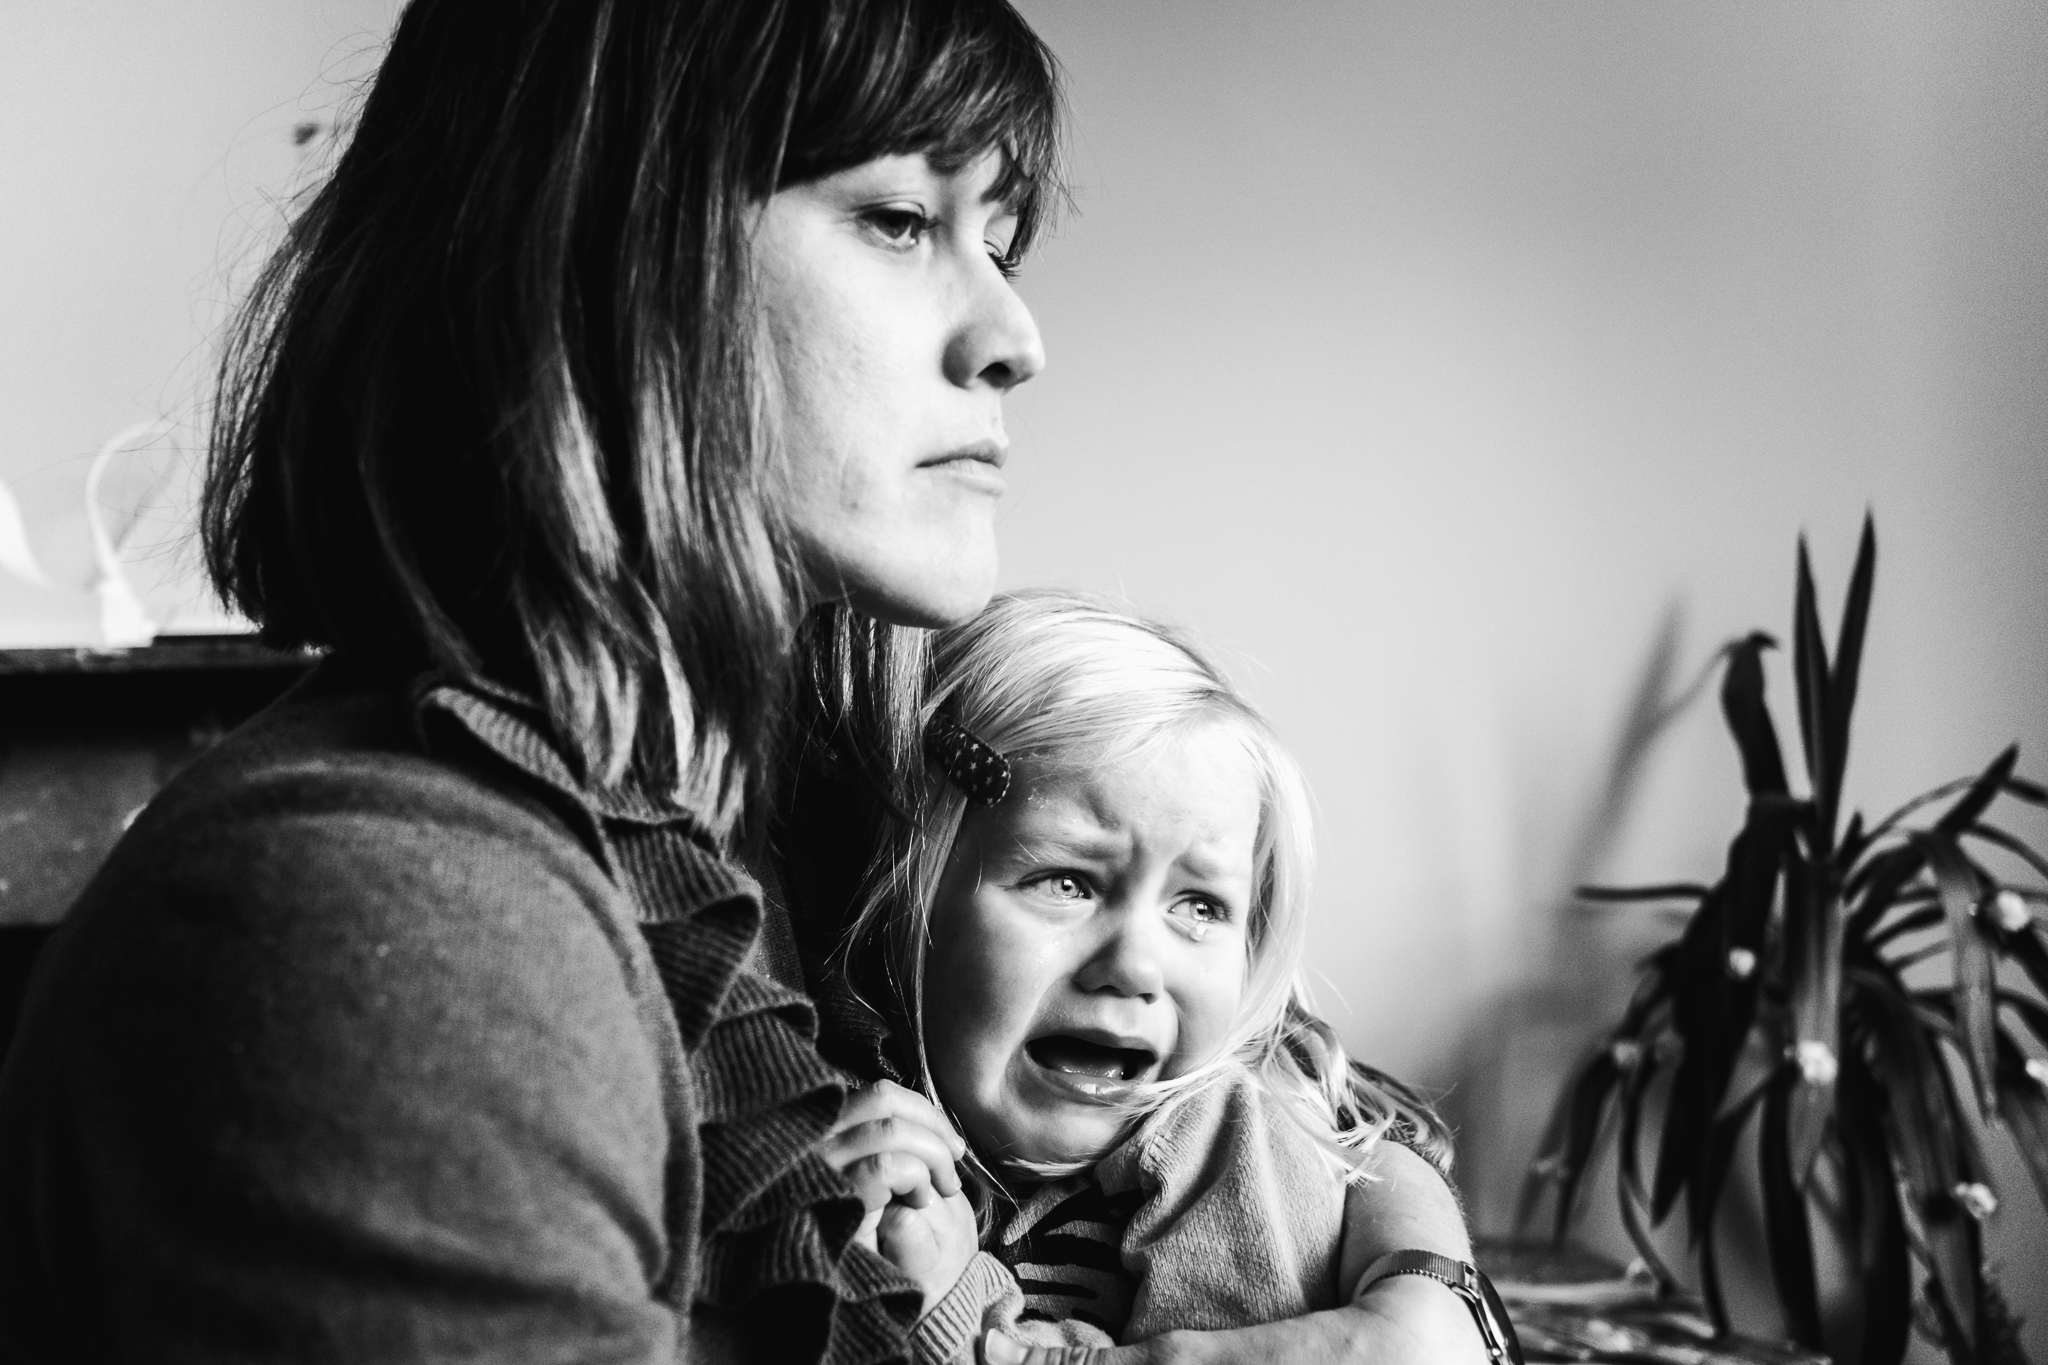 mama kijkt heel boos en streng naar haar zoon terwijl haar dochter huilend op haar schoot zit